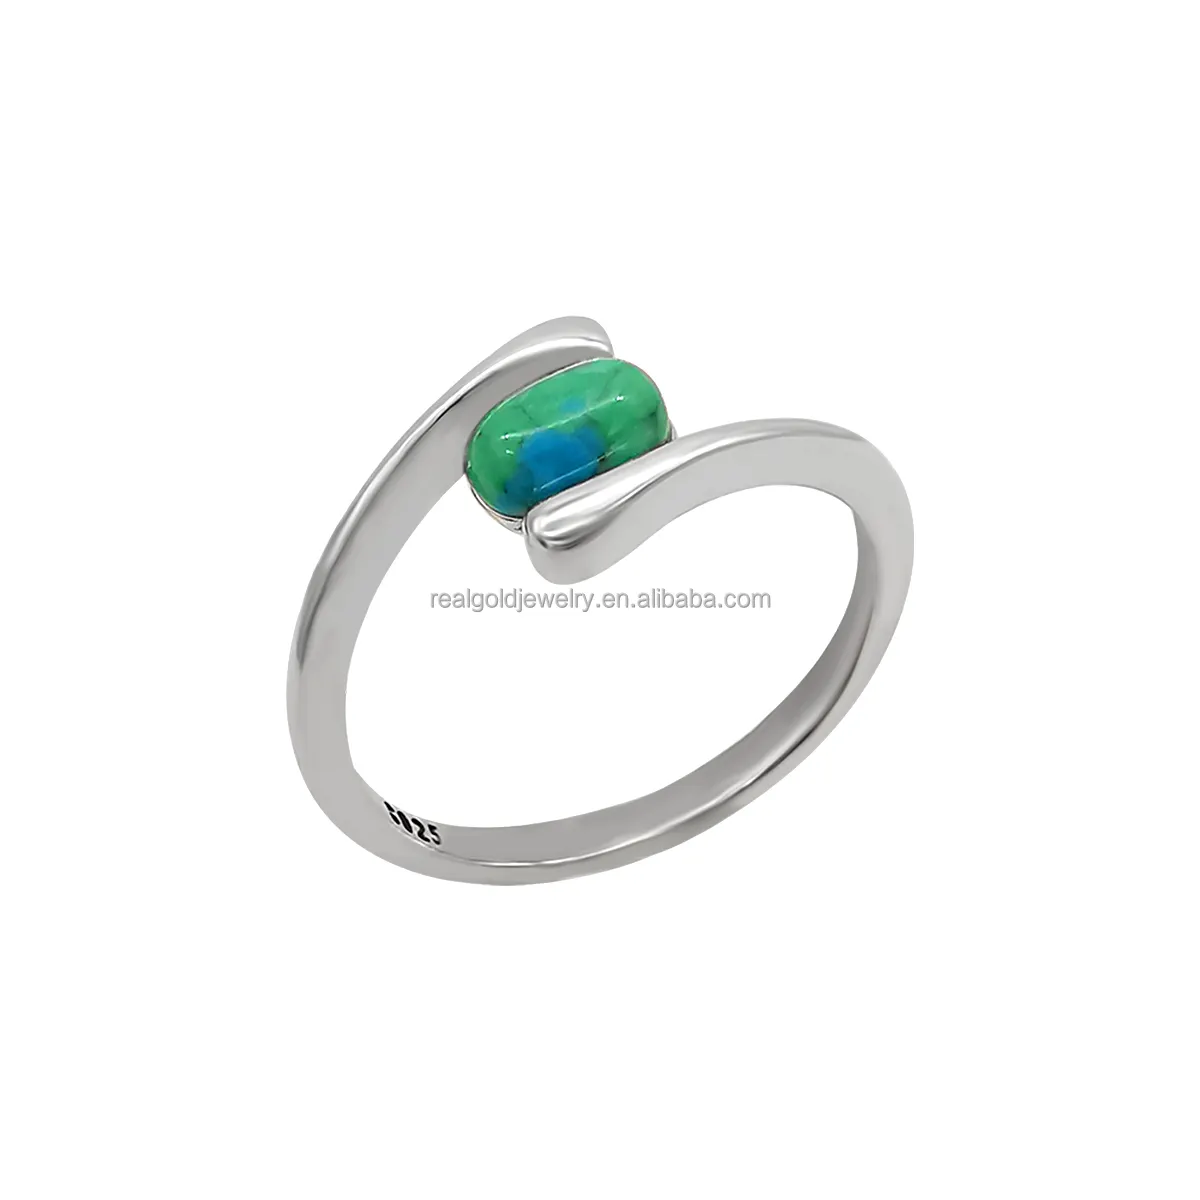 Joyería fina S925 anillo de ley con exquisita piedra preciosa turquesa natural estilo de moda para regalo de compromiso para Unisex